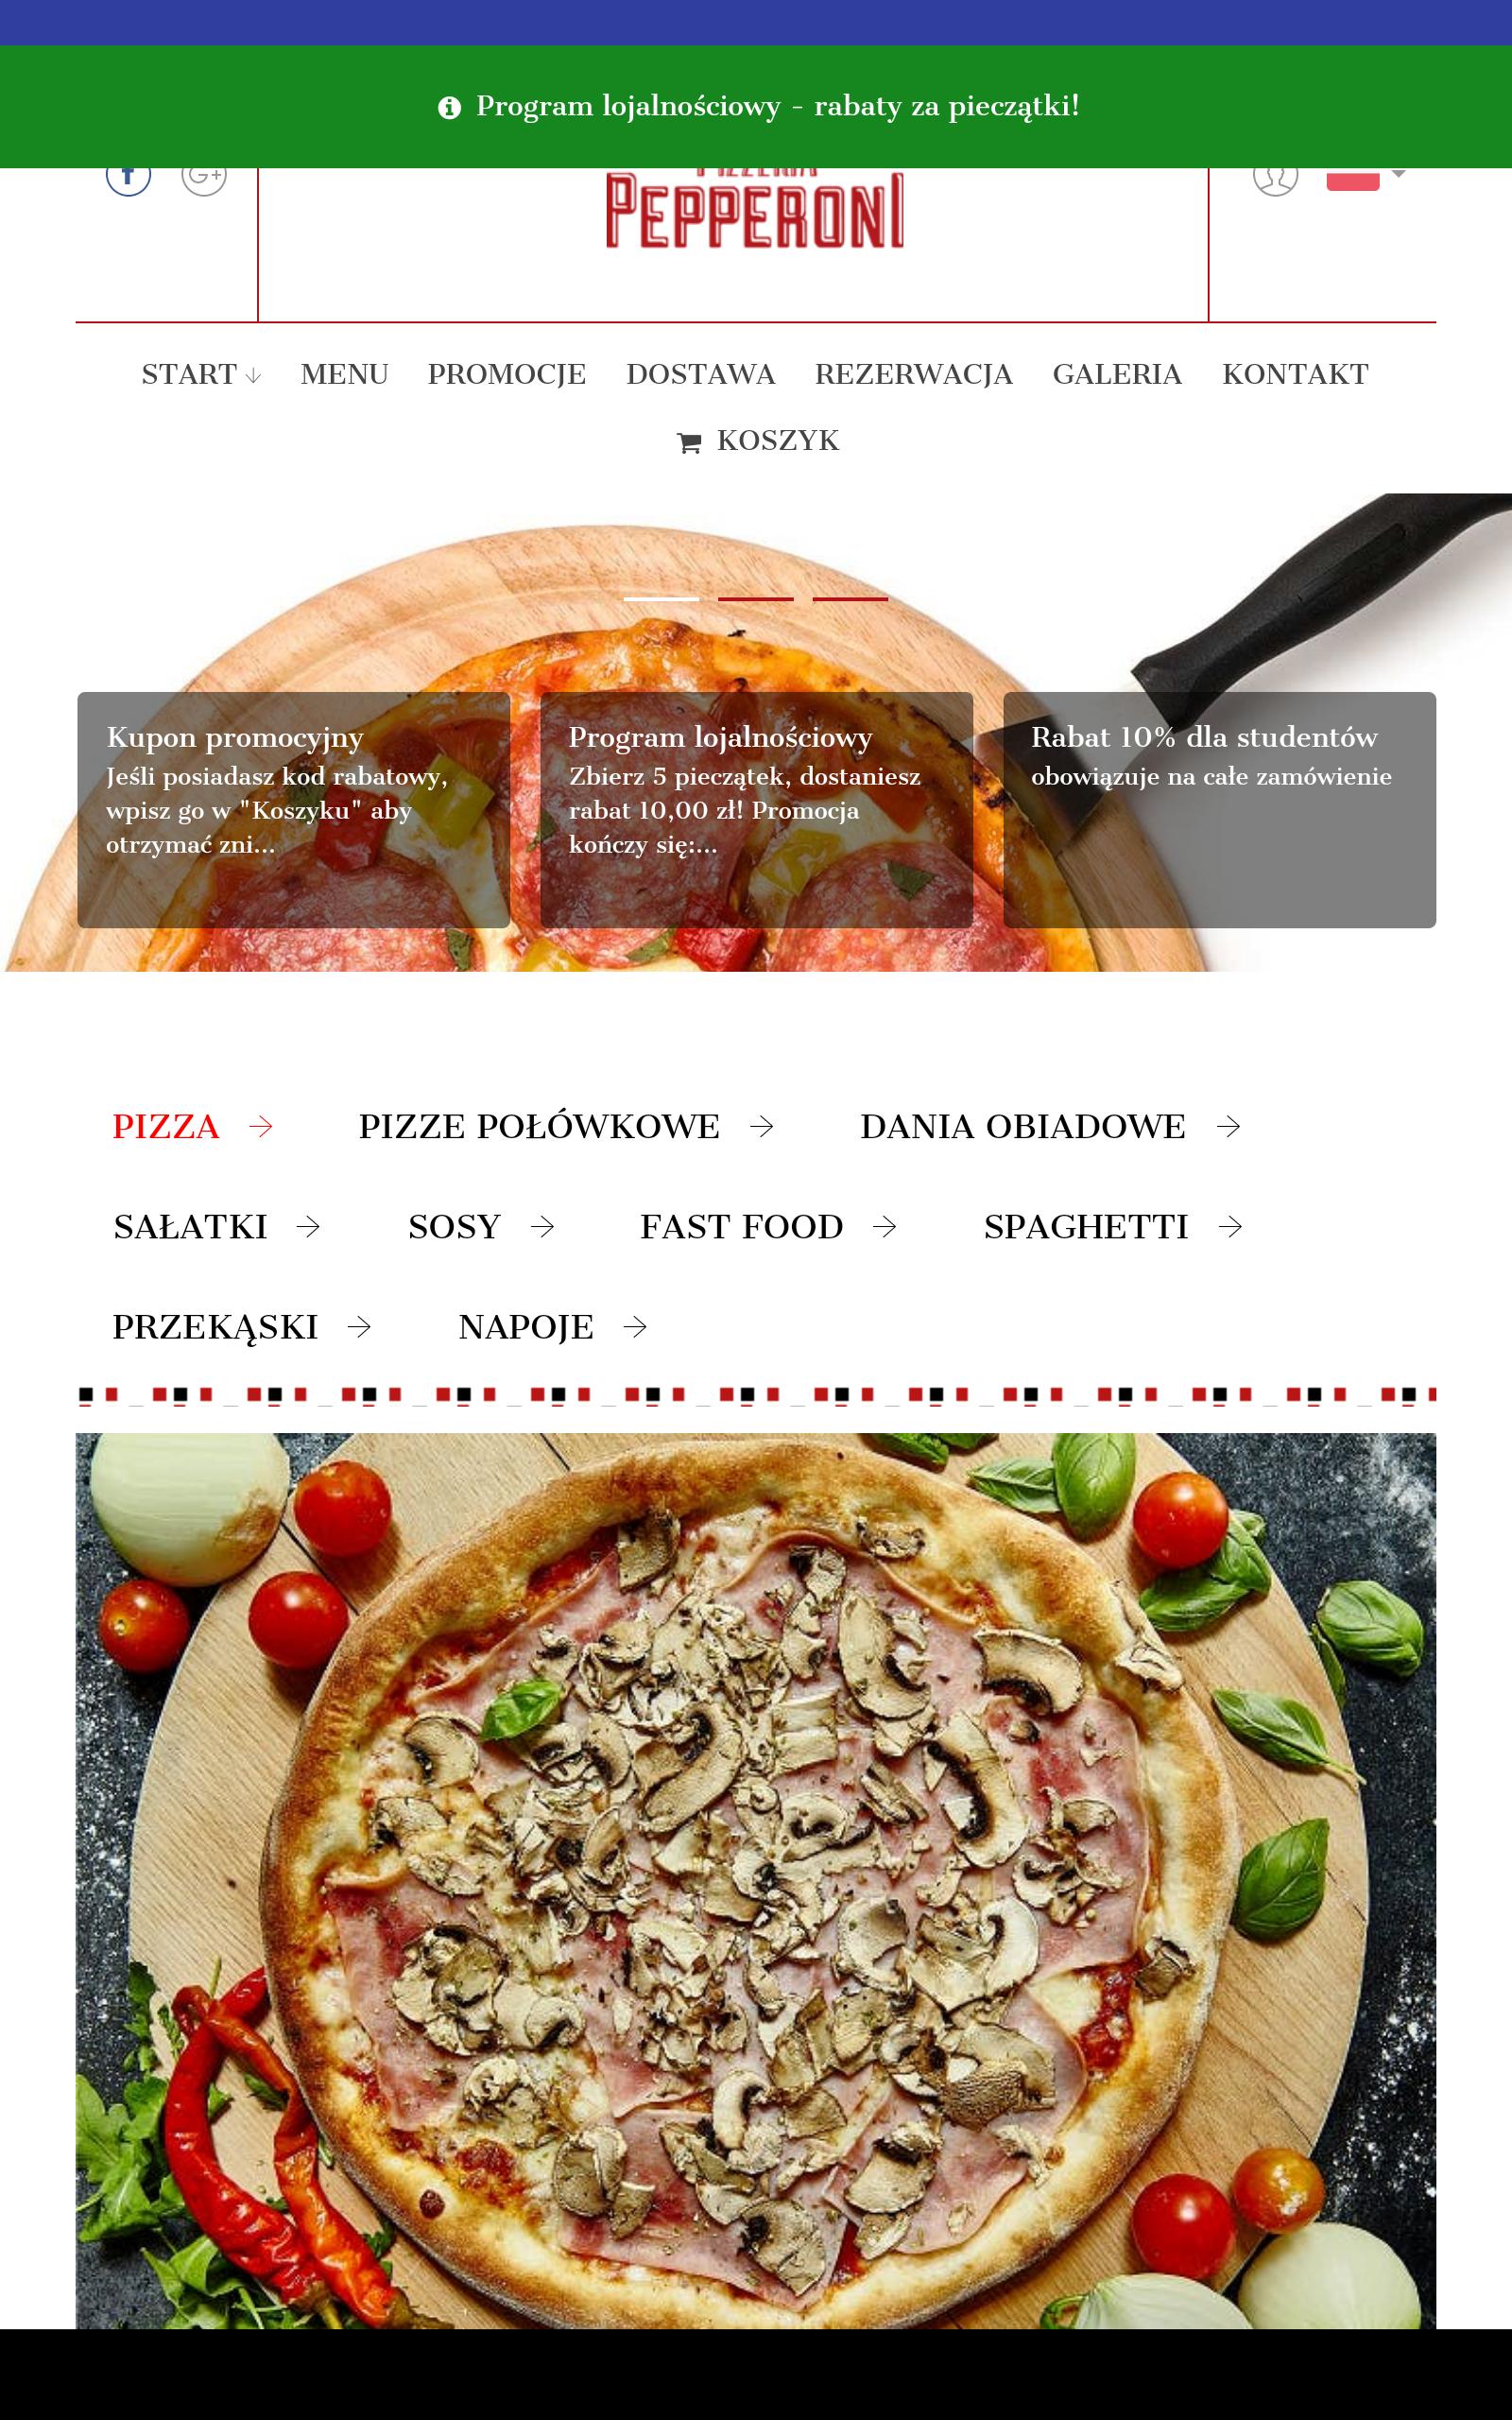 технико технологическая карта пиццы пепперони фото 24